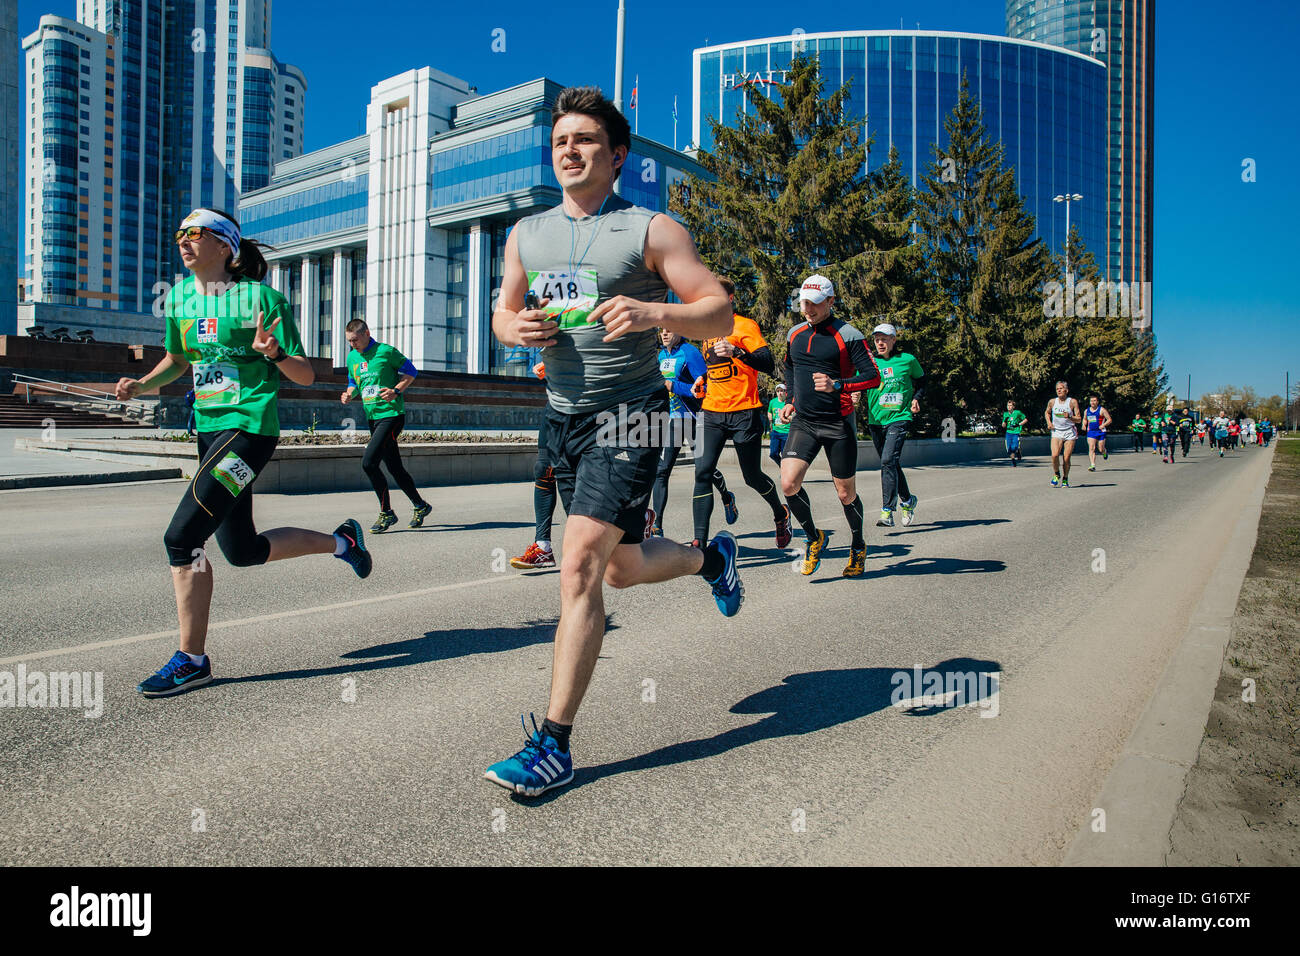 Grupo de atletas corredores corriendo por las calles de la ciudad con rascacielos en segundo plano. Foto de stock